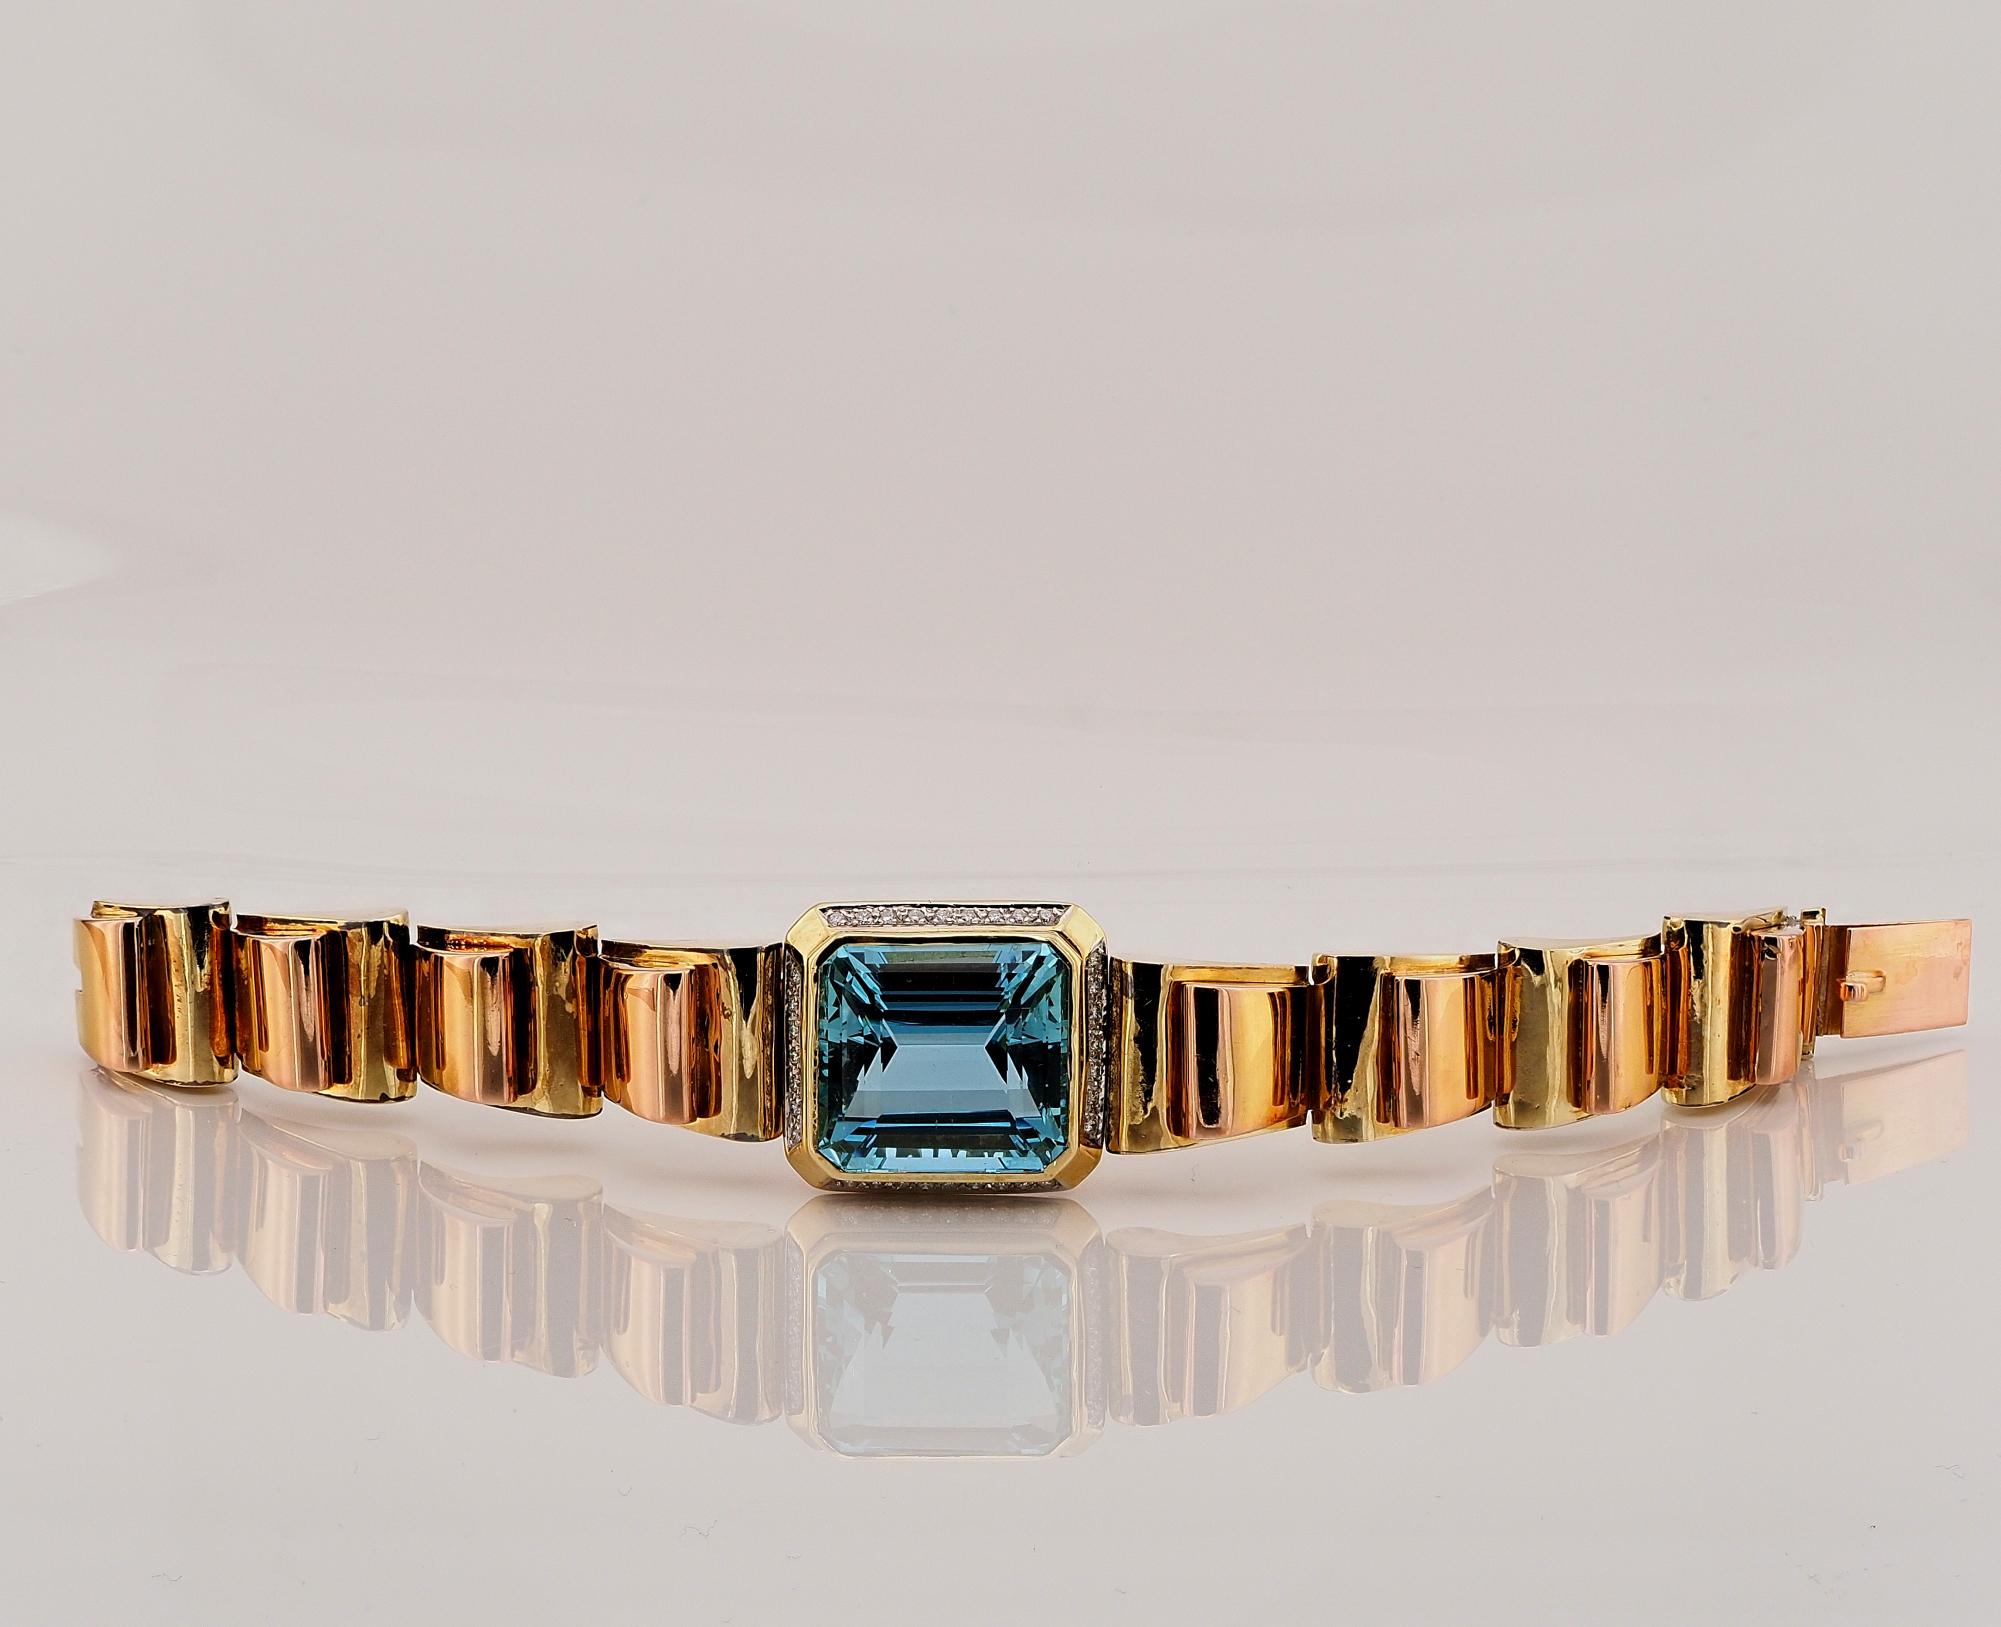 Bigli et BIGLI
Chic et unique, ce bracelet original et audacieux de style déco/rétro est glamour et somptueux, créé de façon unique.
Fabriqué à la main en or massif 18 KT, rose et jaune, couleurs d'or combinées, pour le rare bracelet réservoir